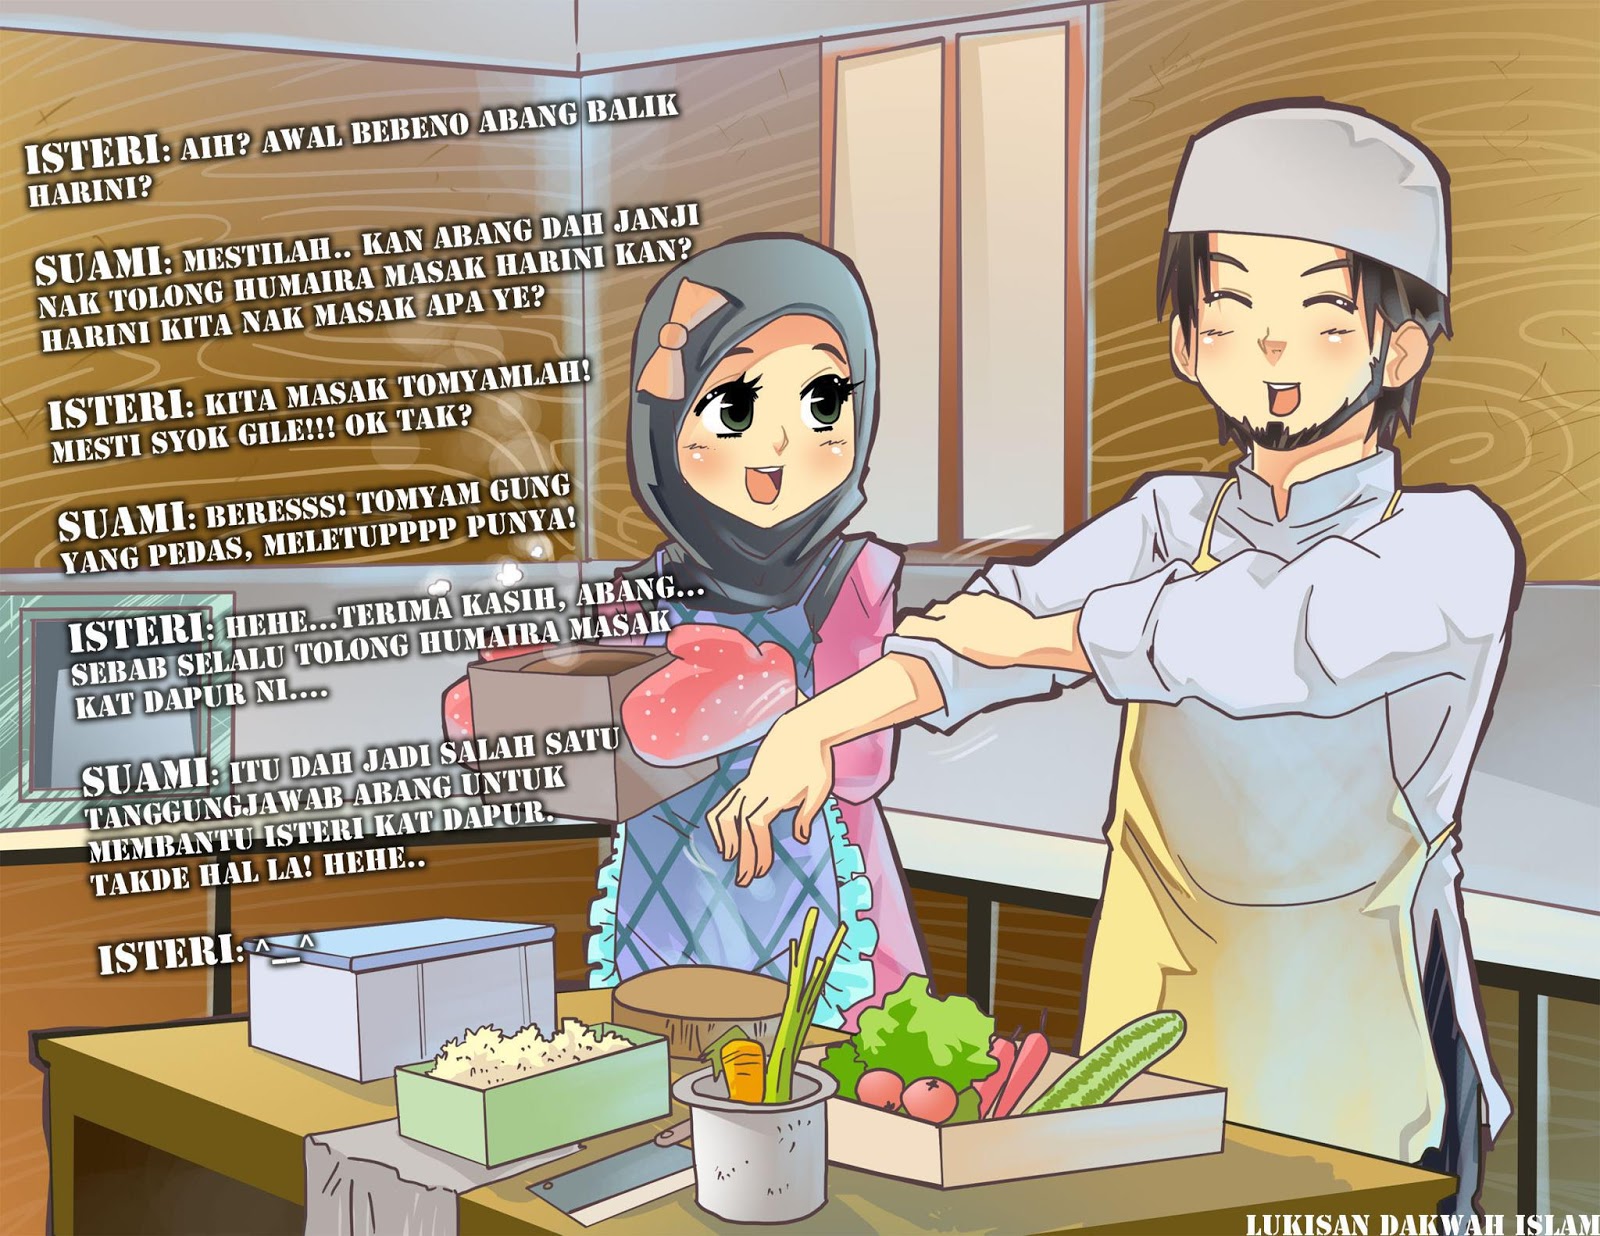 Qaseh Qommunity: Dapur, Wanita & Anda!